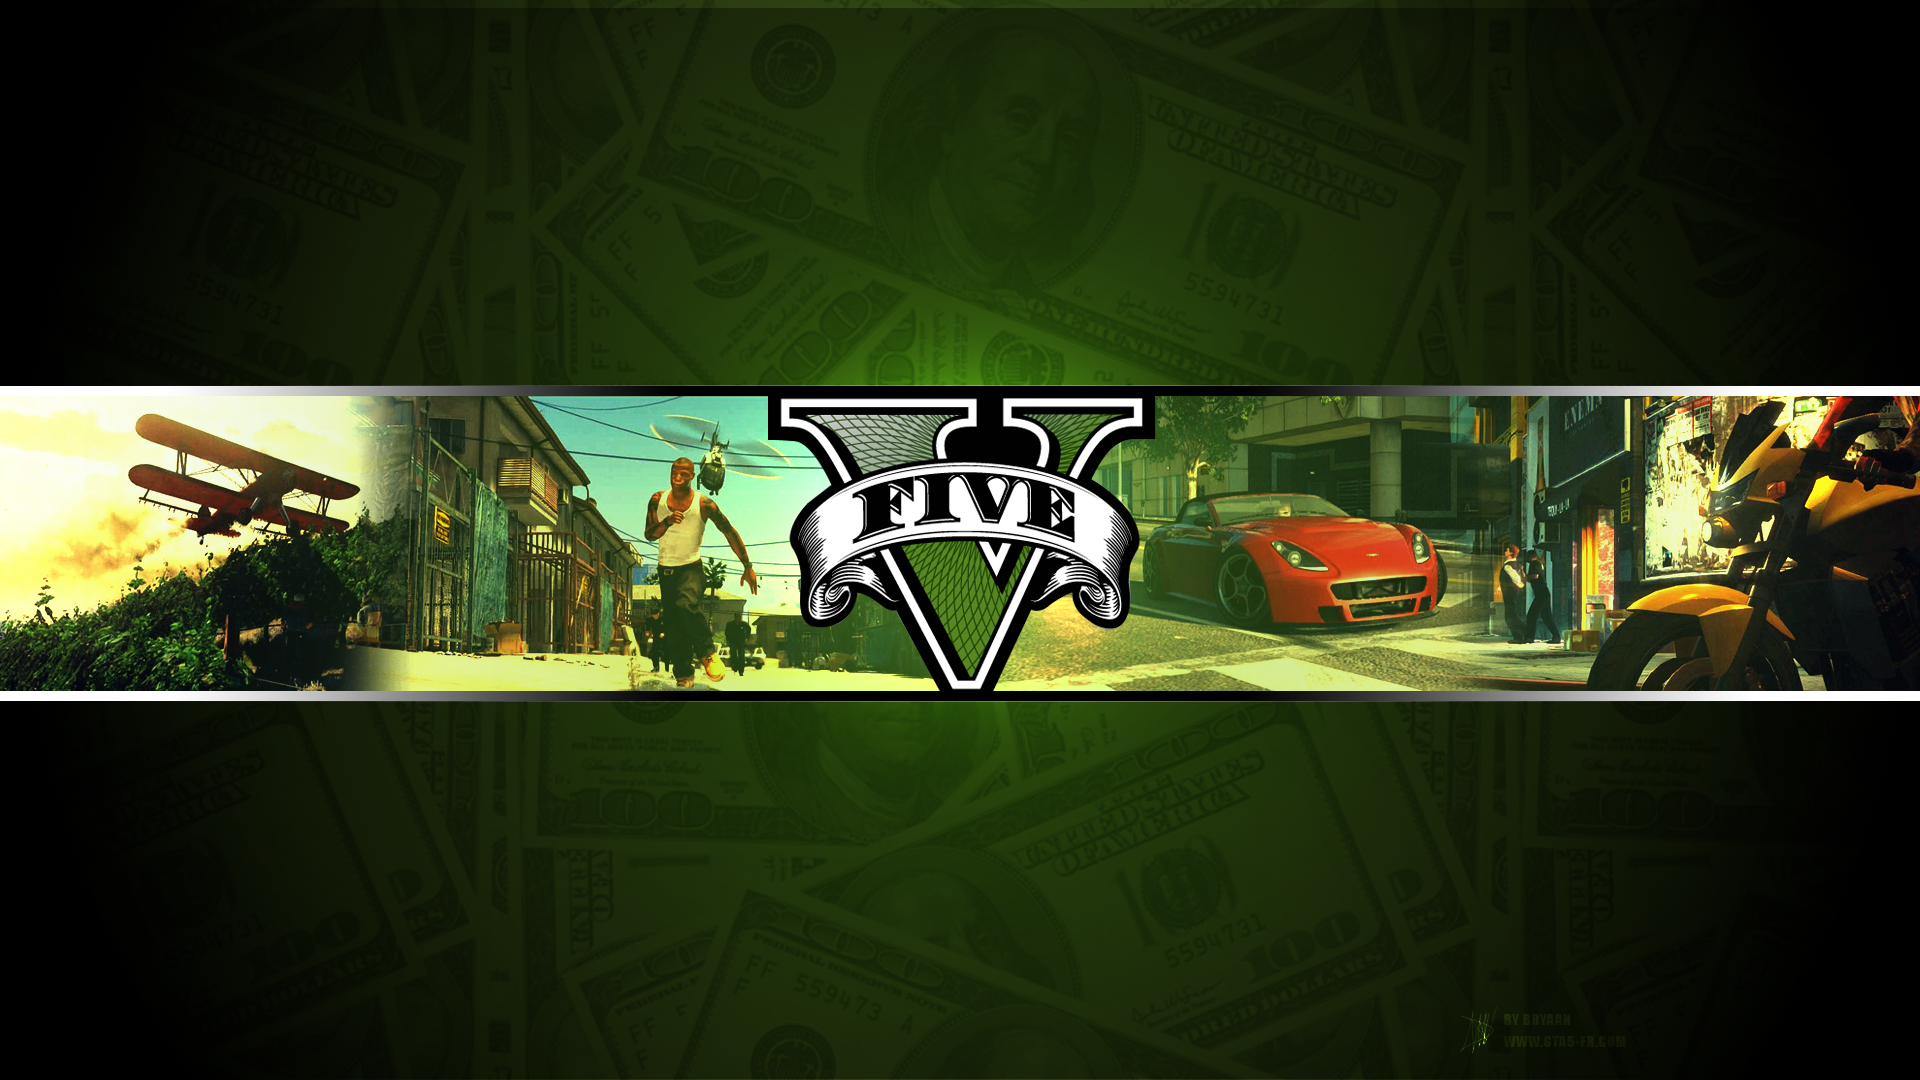 Grand Theft Auto V Desktop Background HD 1920x1080 deskbg.com